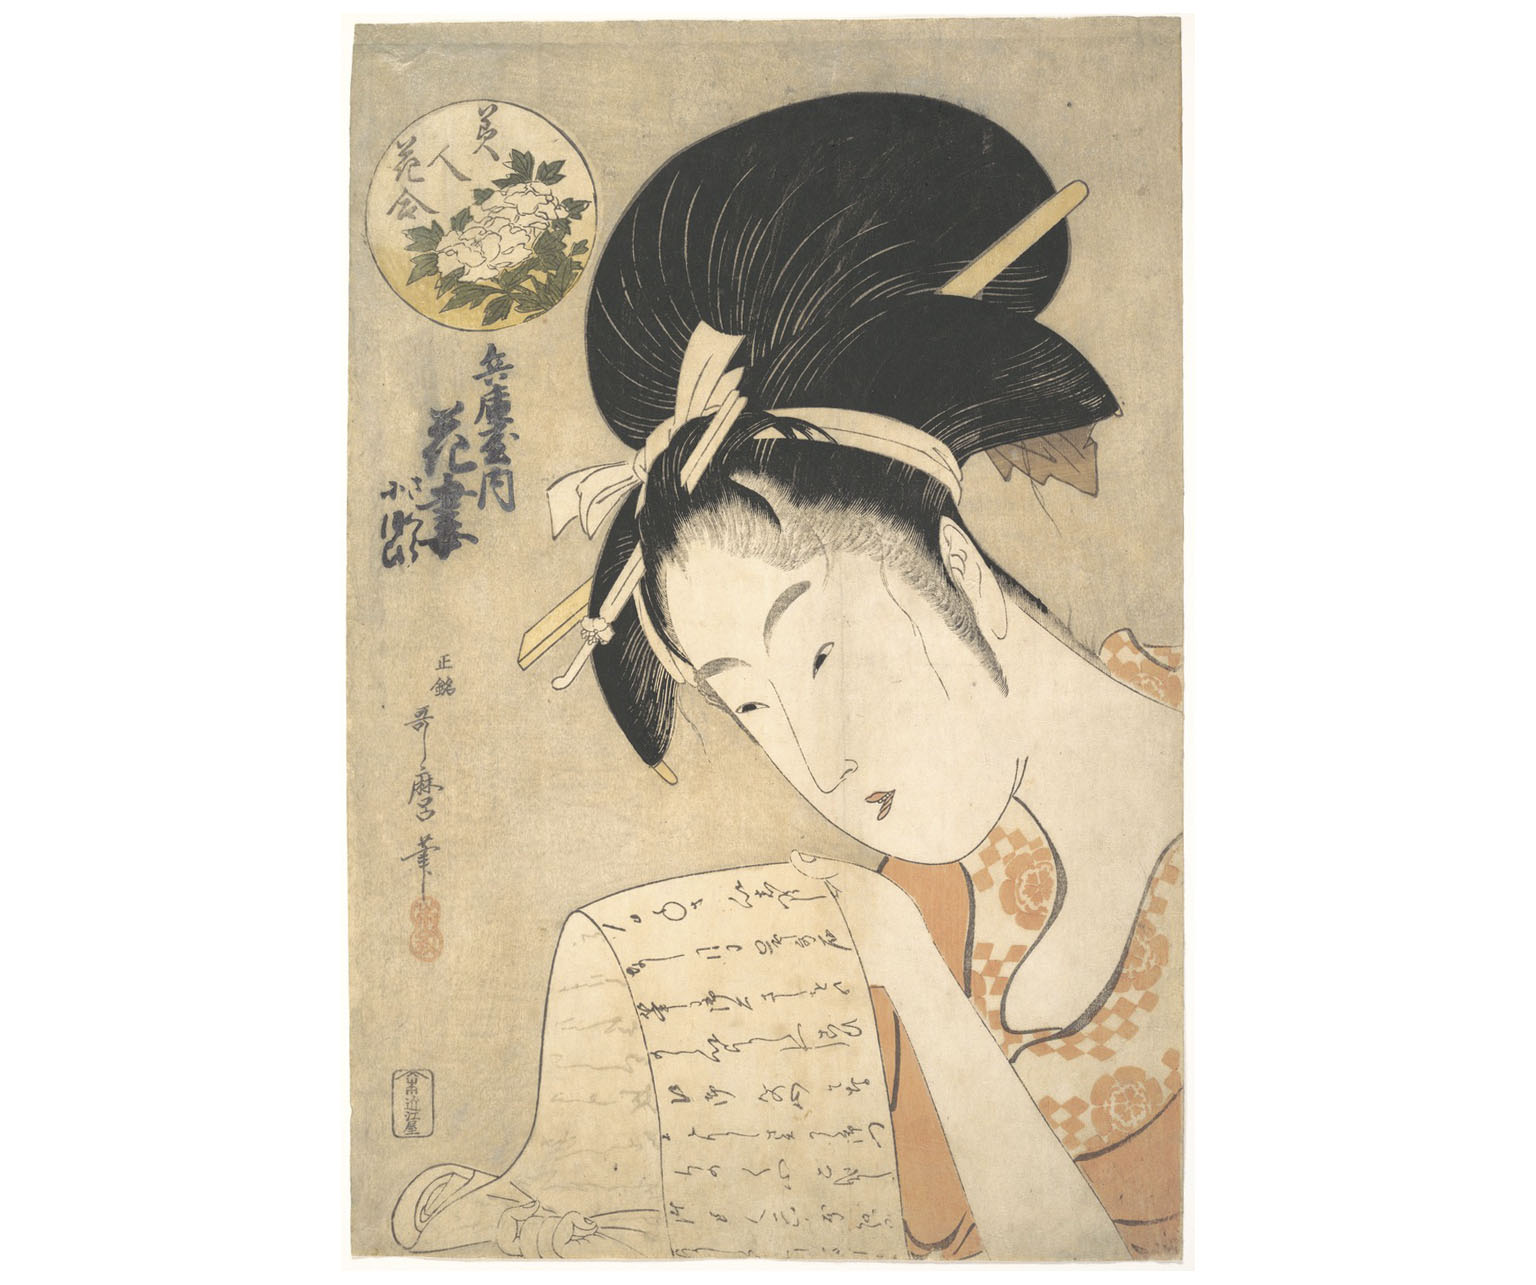 A cortesã Hanazuma lendo uma carta, década de 1790, por Kitagawa Utamaro. Xilogravura sobre papel, 38,7 x 26 cm. The Metropolitan Museum, Nova York